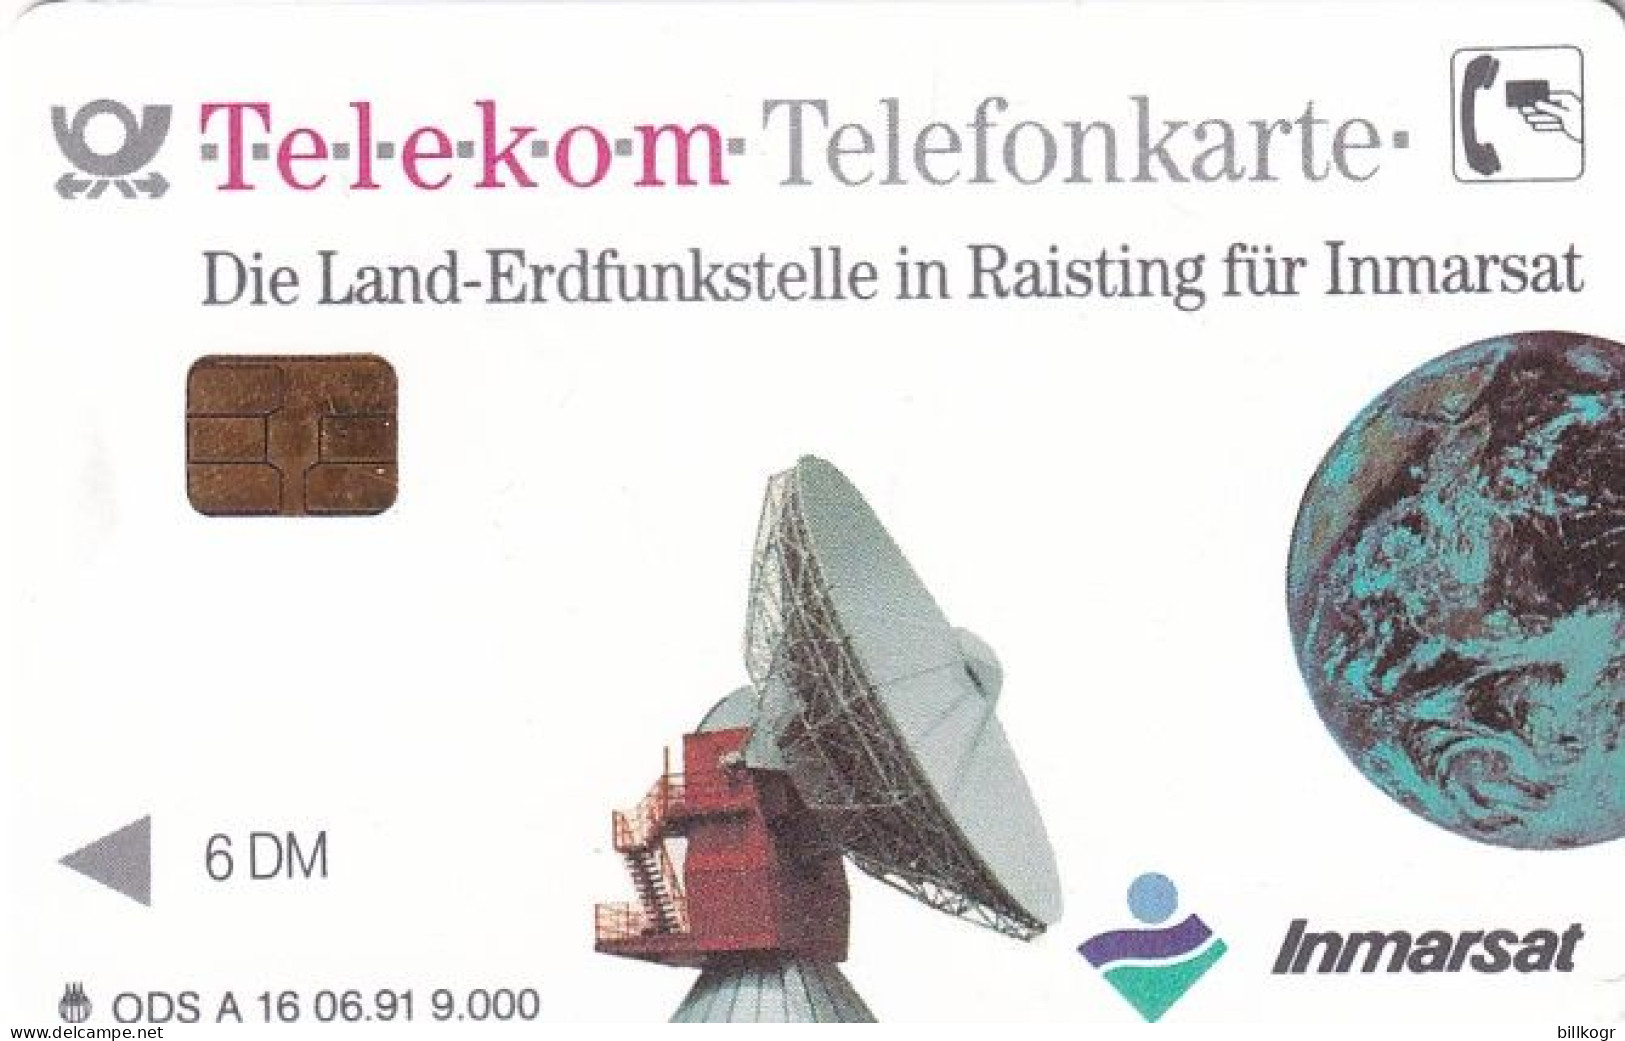 GERMANY - Die Land-Erdfunkstelle Für Inmarsat/Mobilfunk Mit System(A 16), Tirage 9000, 06/91, Mint - A + AD-Series : D. Telekom AG Advertisement